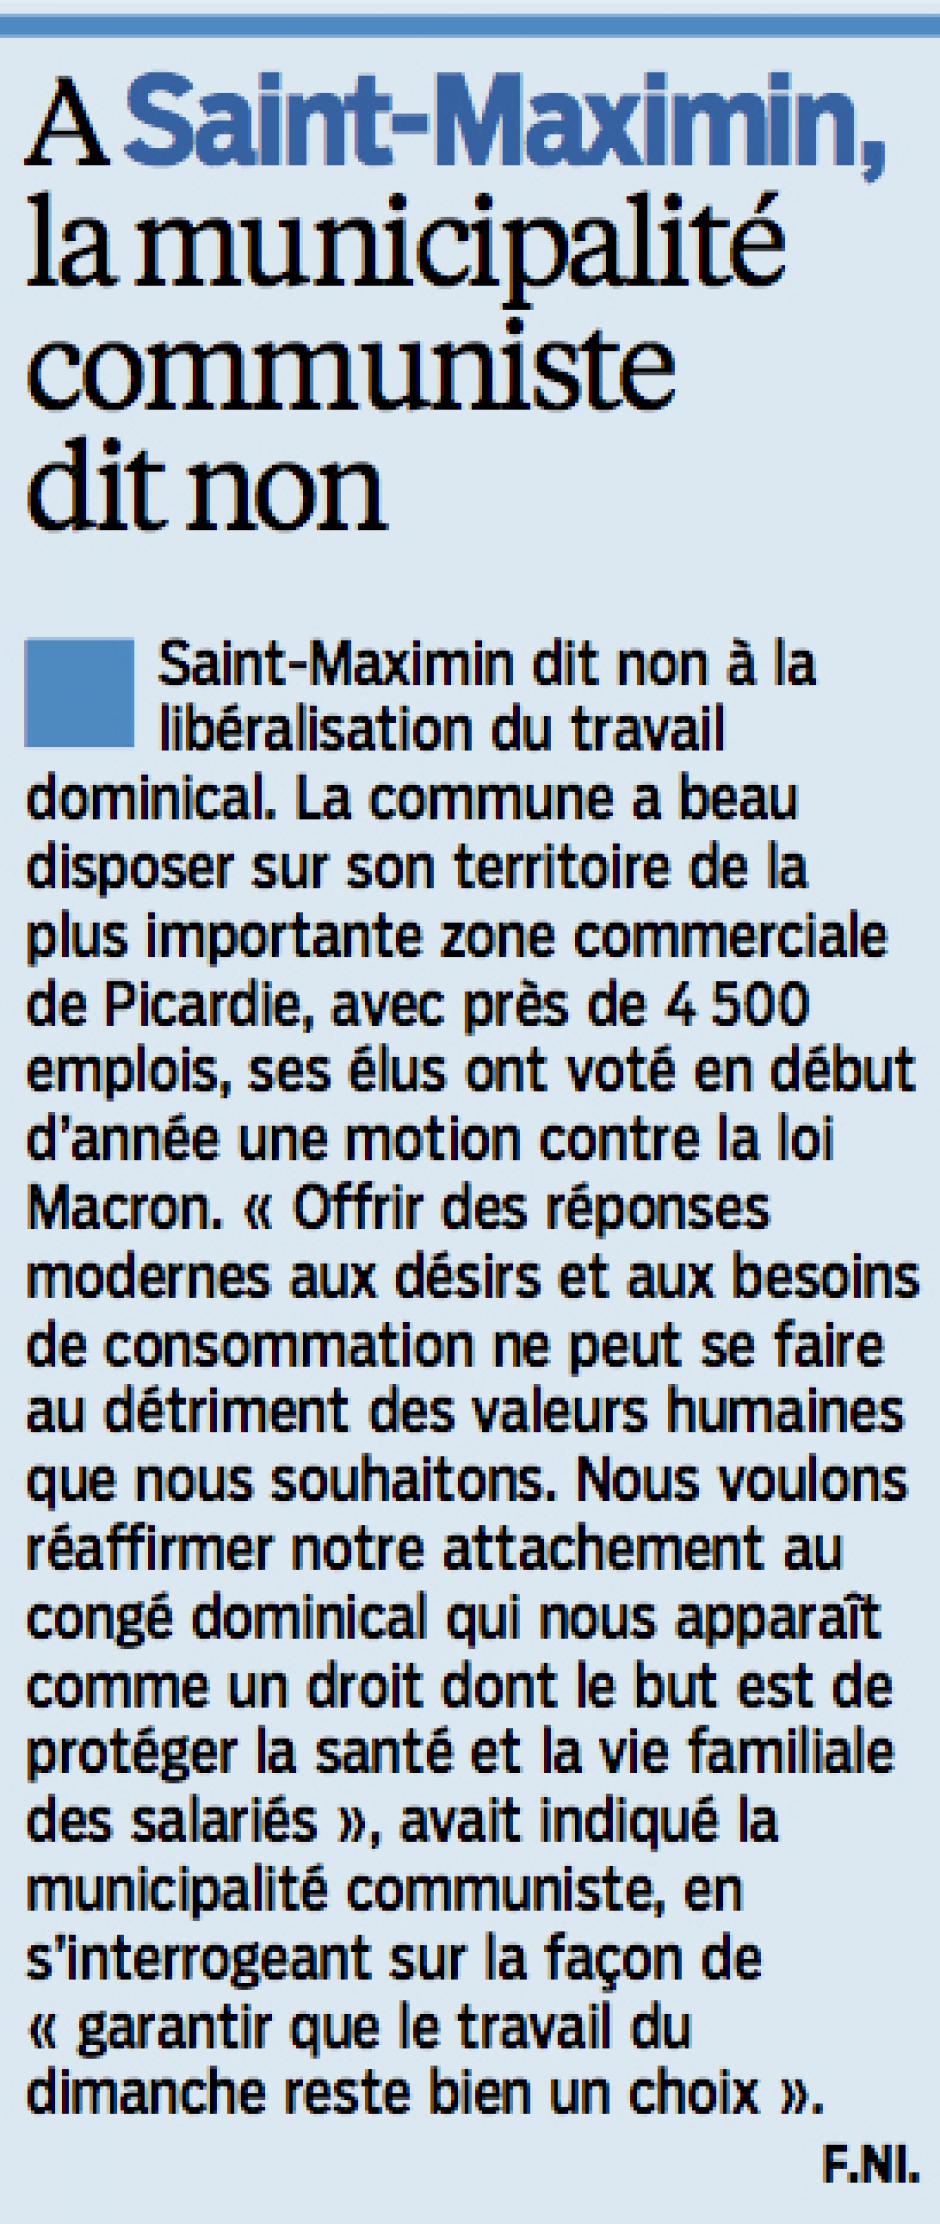 20151012-LeP-Saint-Maximin-La municipalité communiste dit non [au travail dominical]